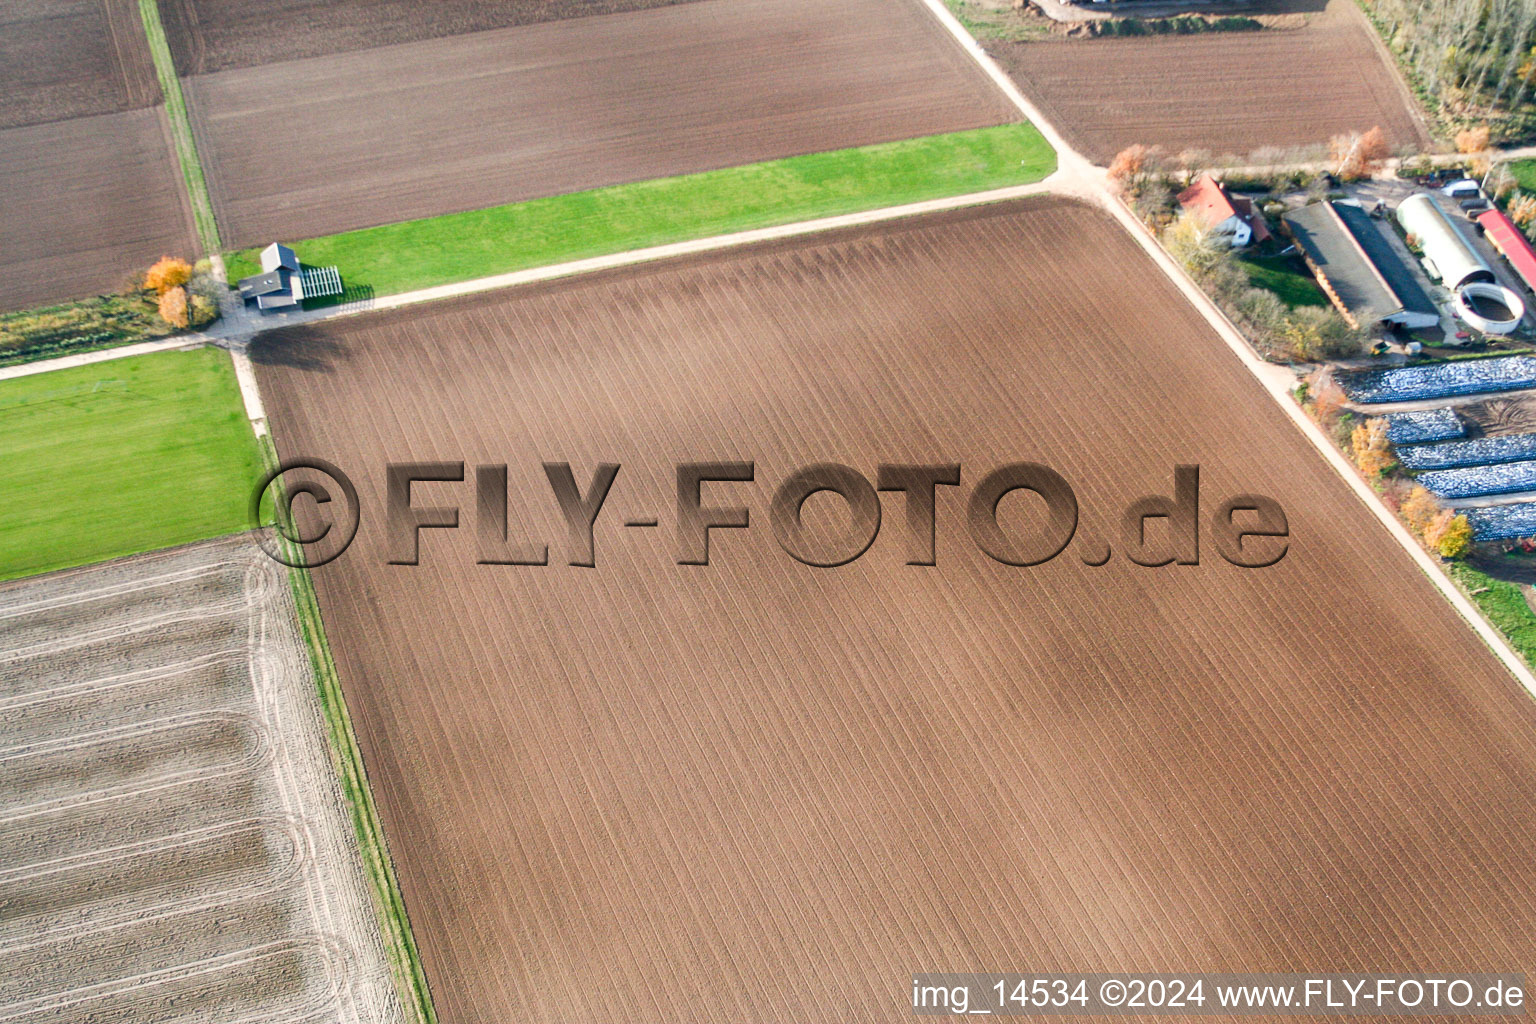 Aérodrome modèle à Offenbach an der Queich dans le département Rhénanie-Palatinat, Allemagne hors des airs